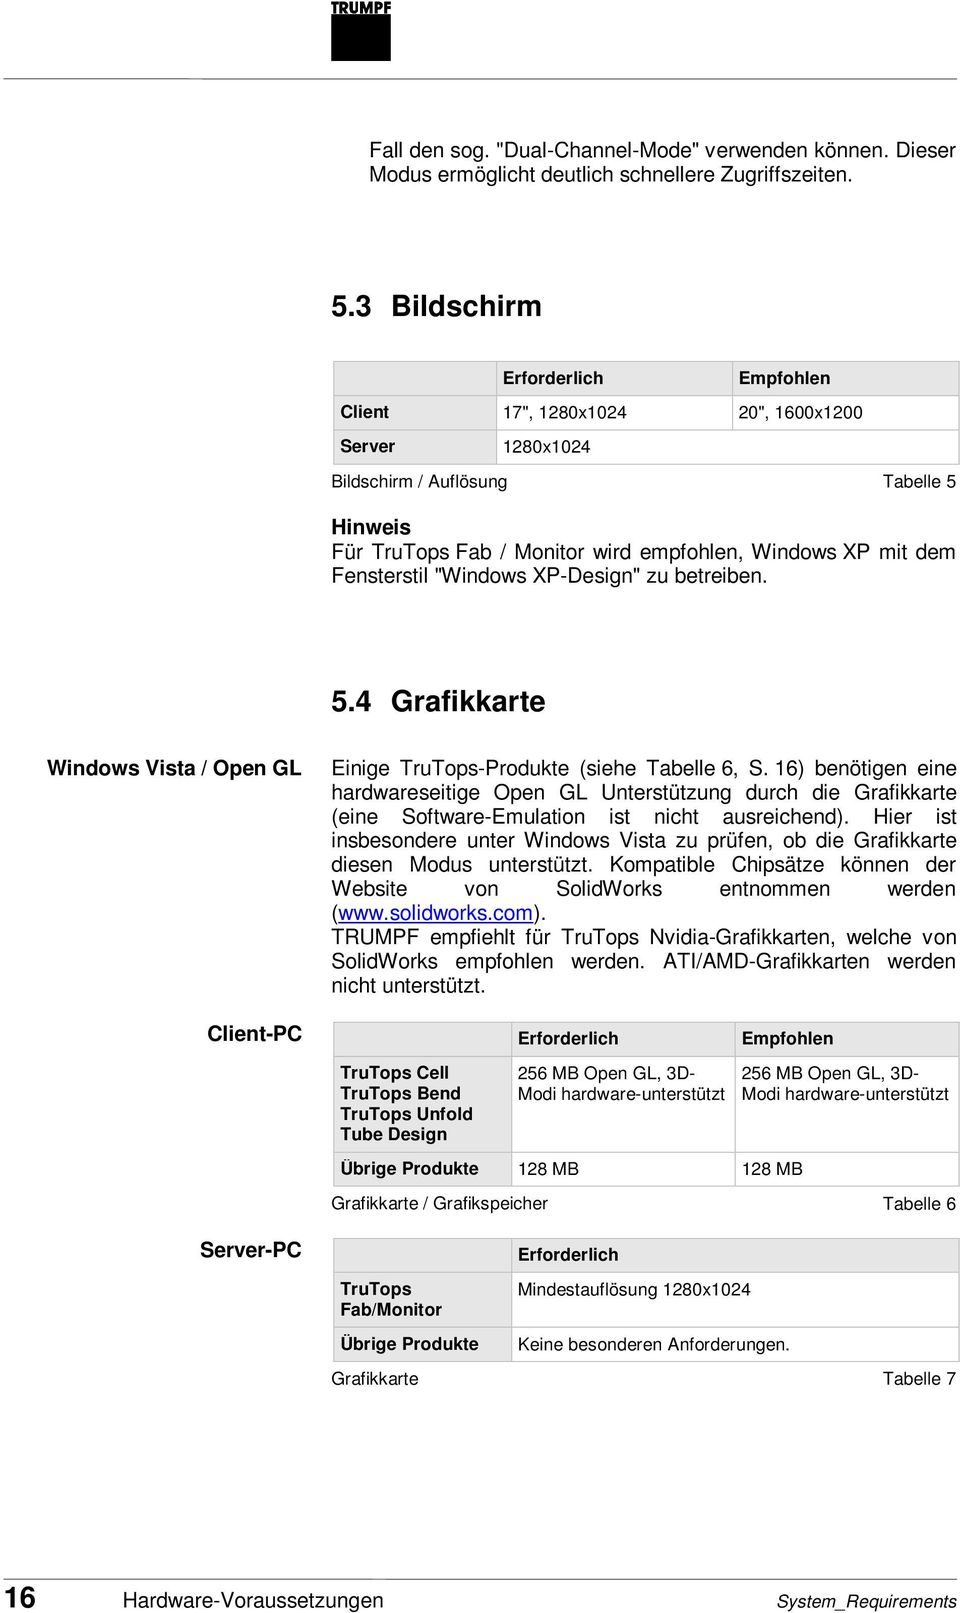 Fensterstil "Windows XP-Design" zu betreiben. 5.4 Grafikkarte Windows Vista / Open GL Einige TruTops-Produkte (siehe Tabelle 6, S.